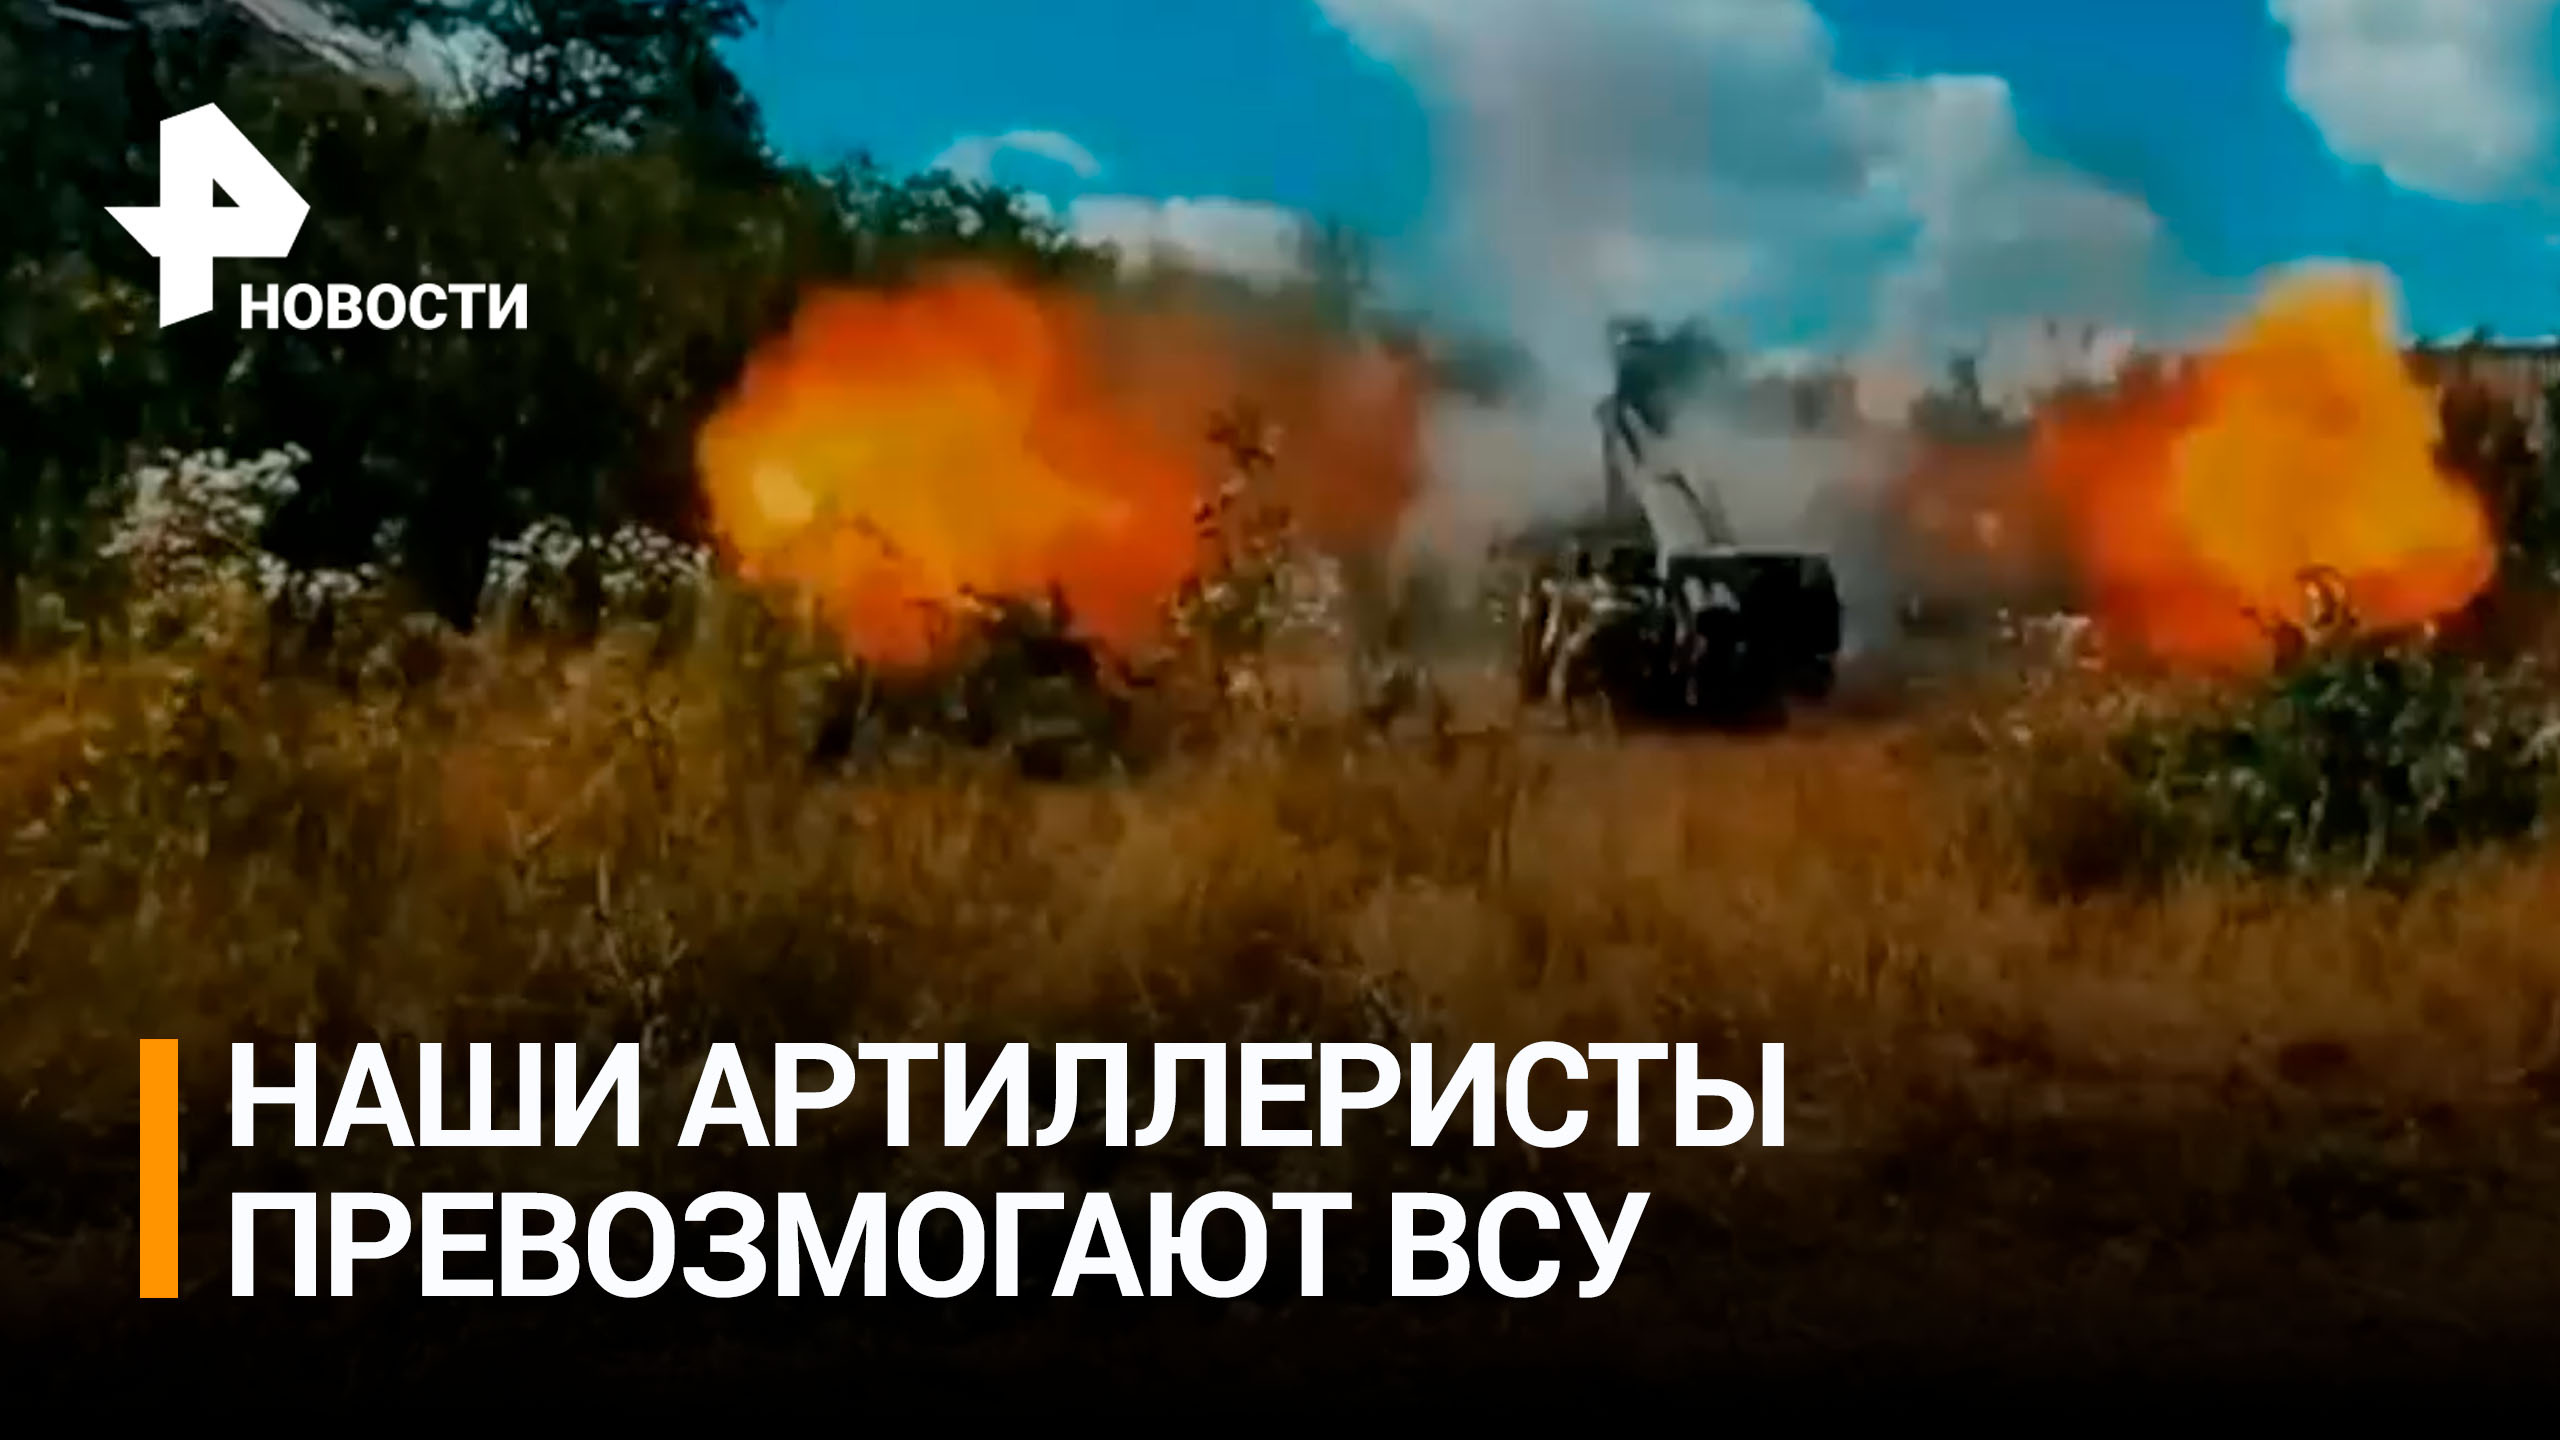 Российские артиллеристы ведут ожесточенные бои под Артемовском / РЕН Новости